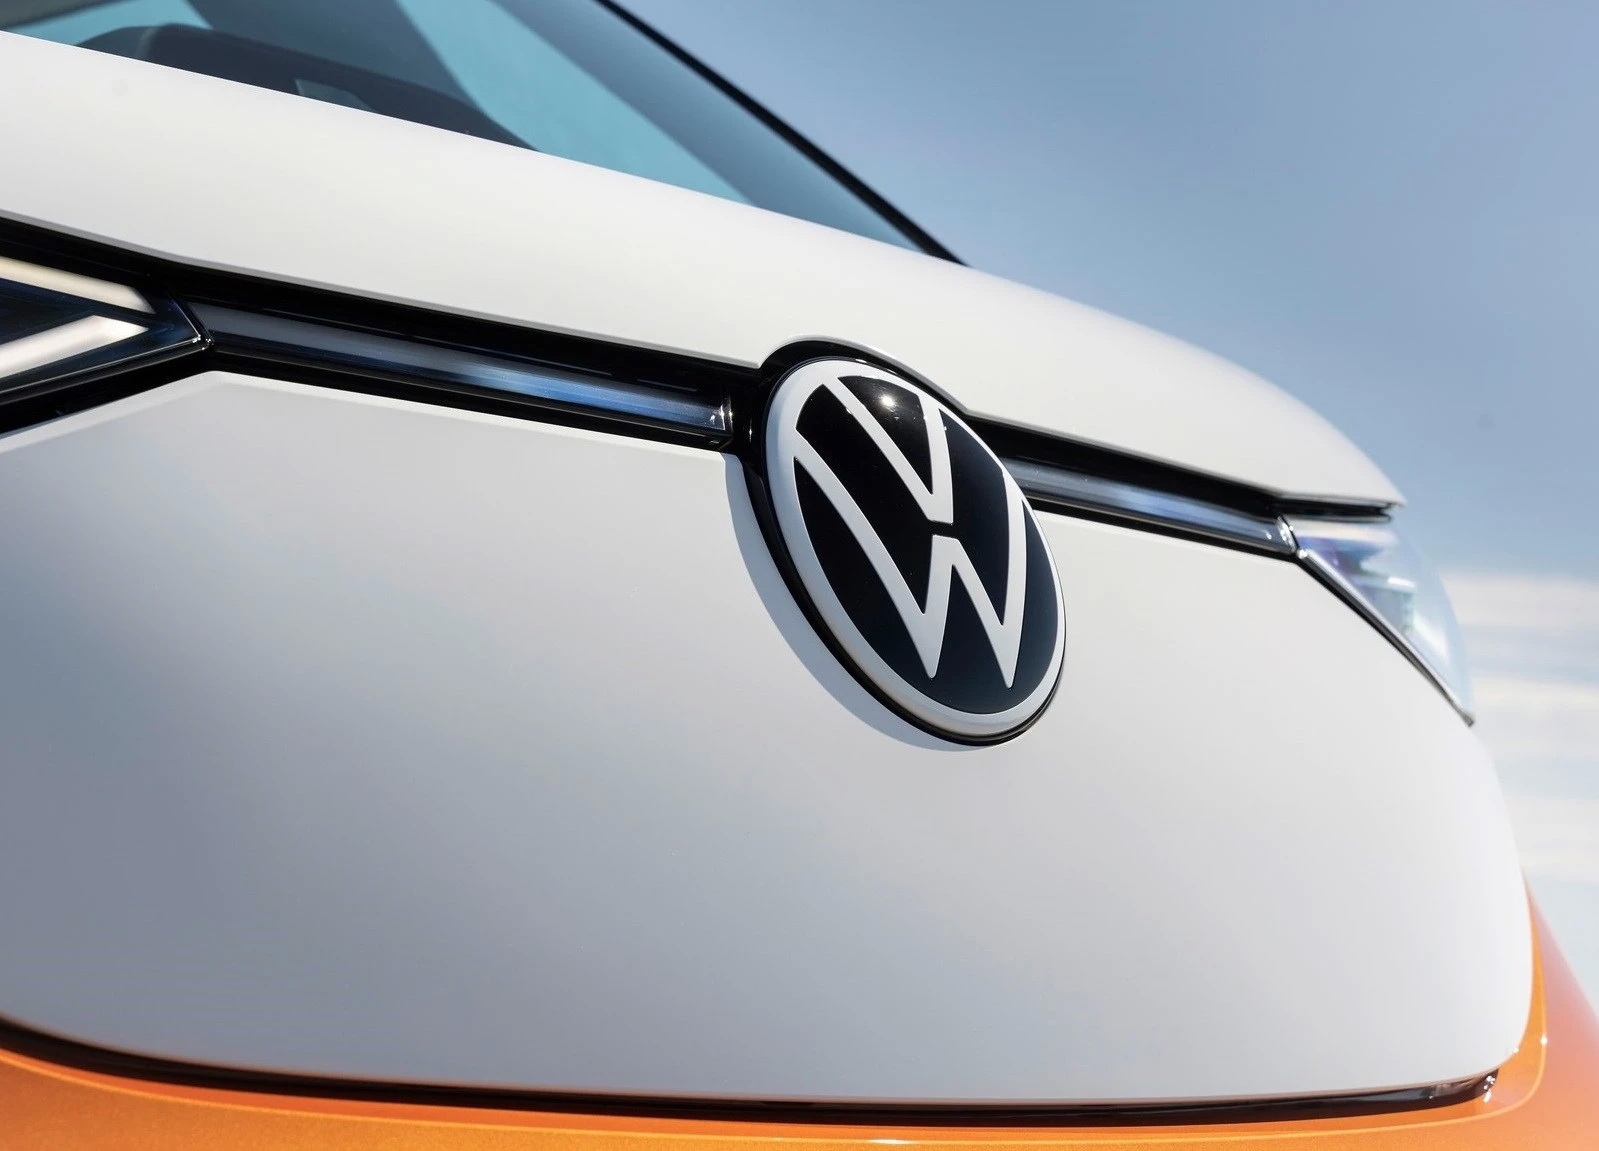 H Volkswagen θέλει να γίνει και παραγωγός μπαταριών